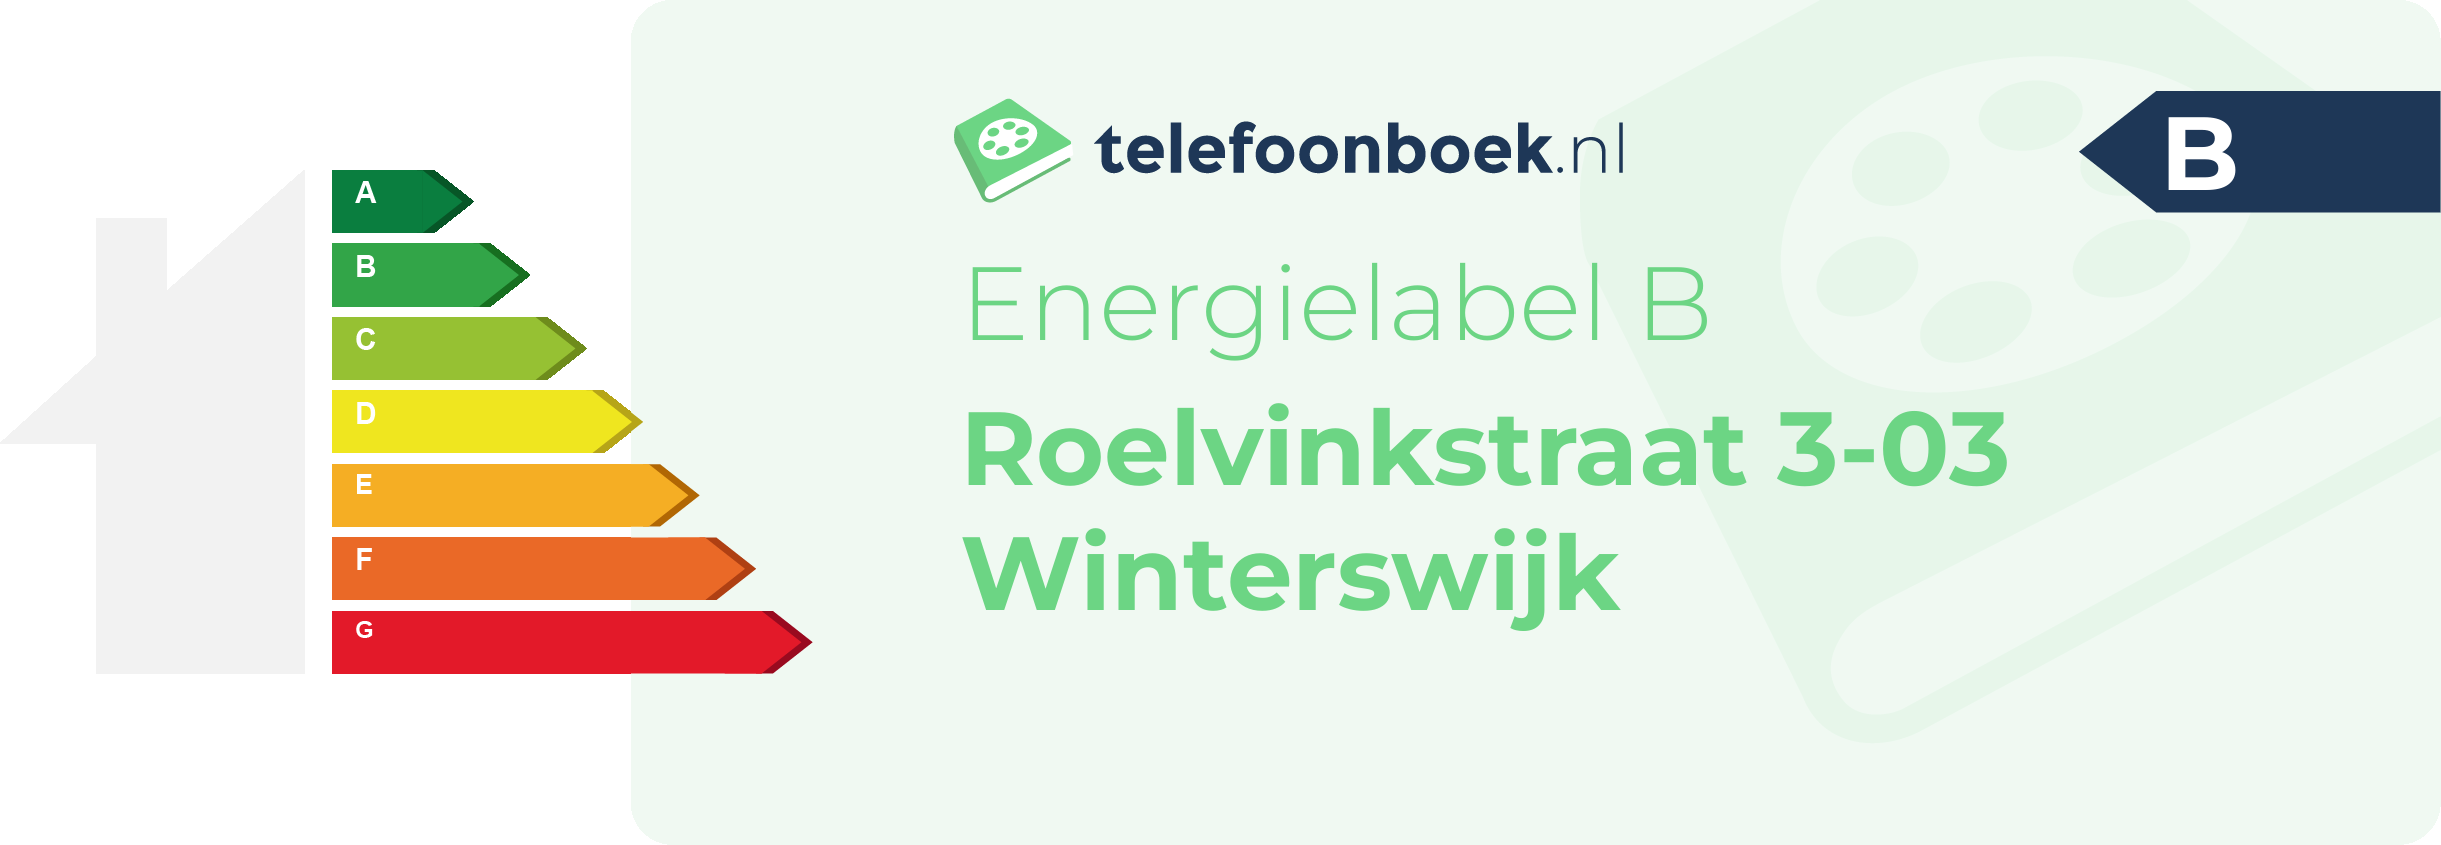 Energielabel Roelvinkstraat 3-03 Winterswijk